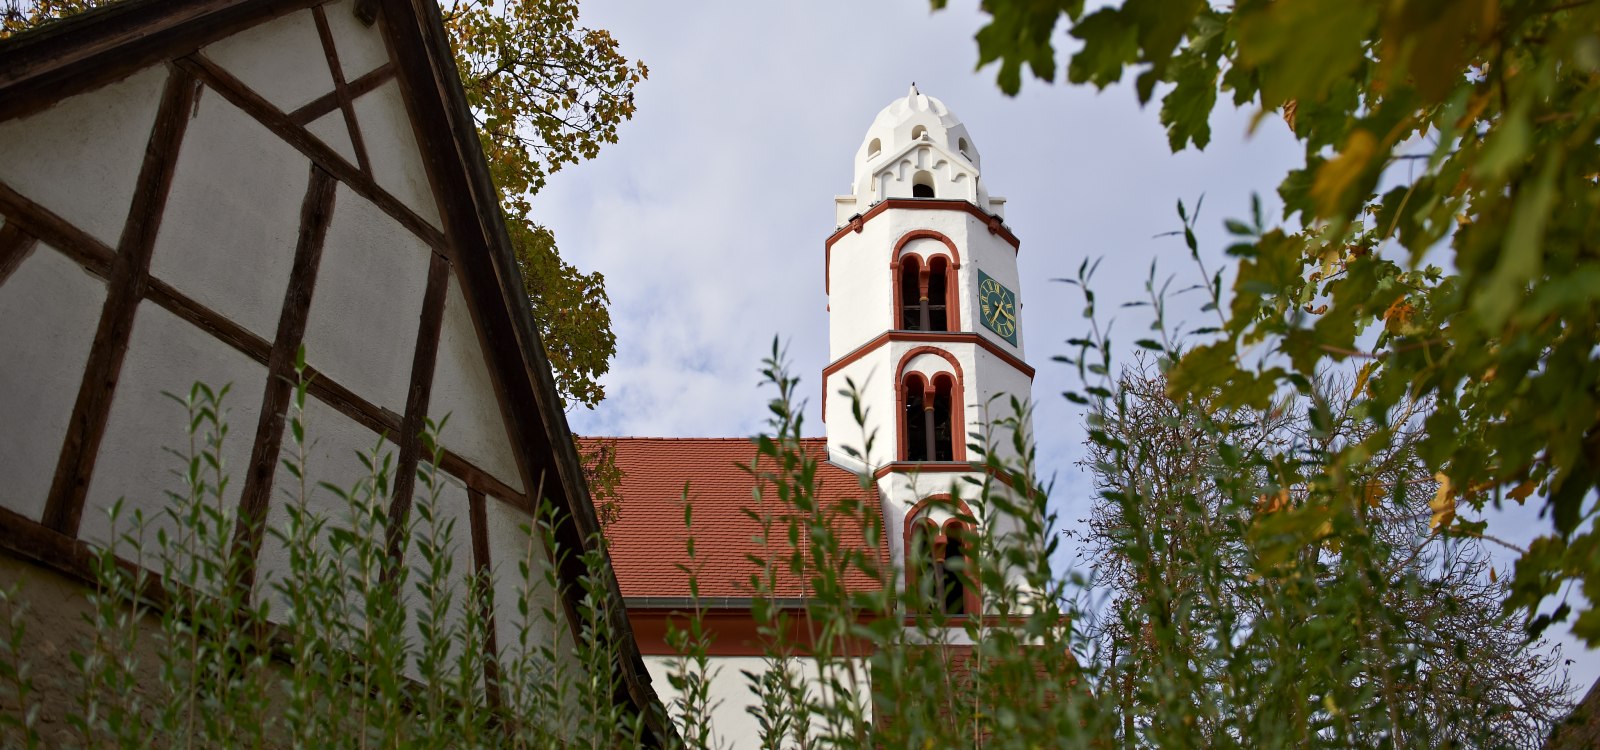 Heidenturm church in Dittelsheim-Hessloch, © Robert Dieth